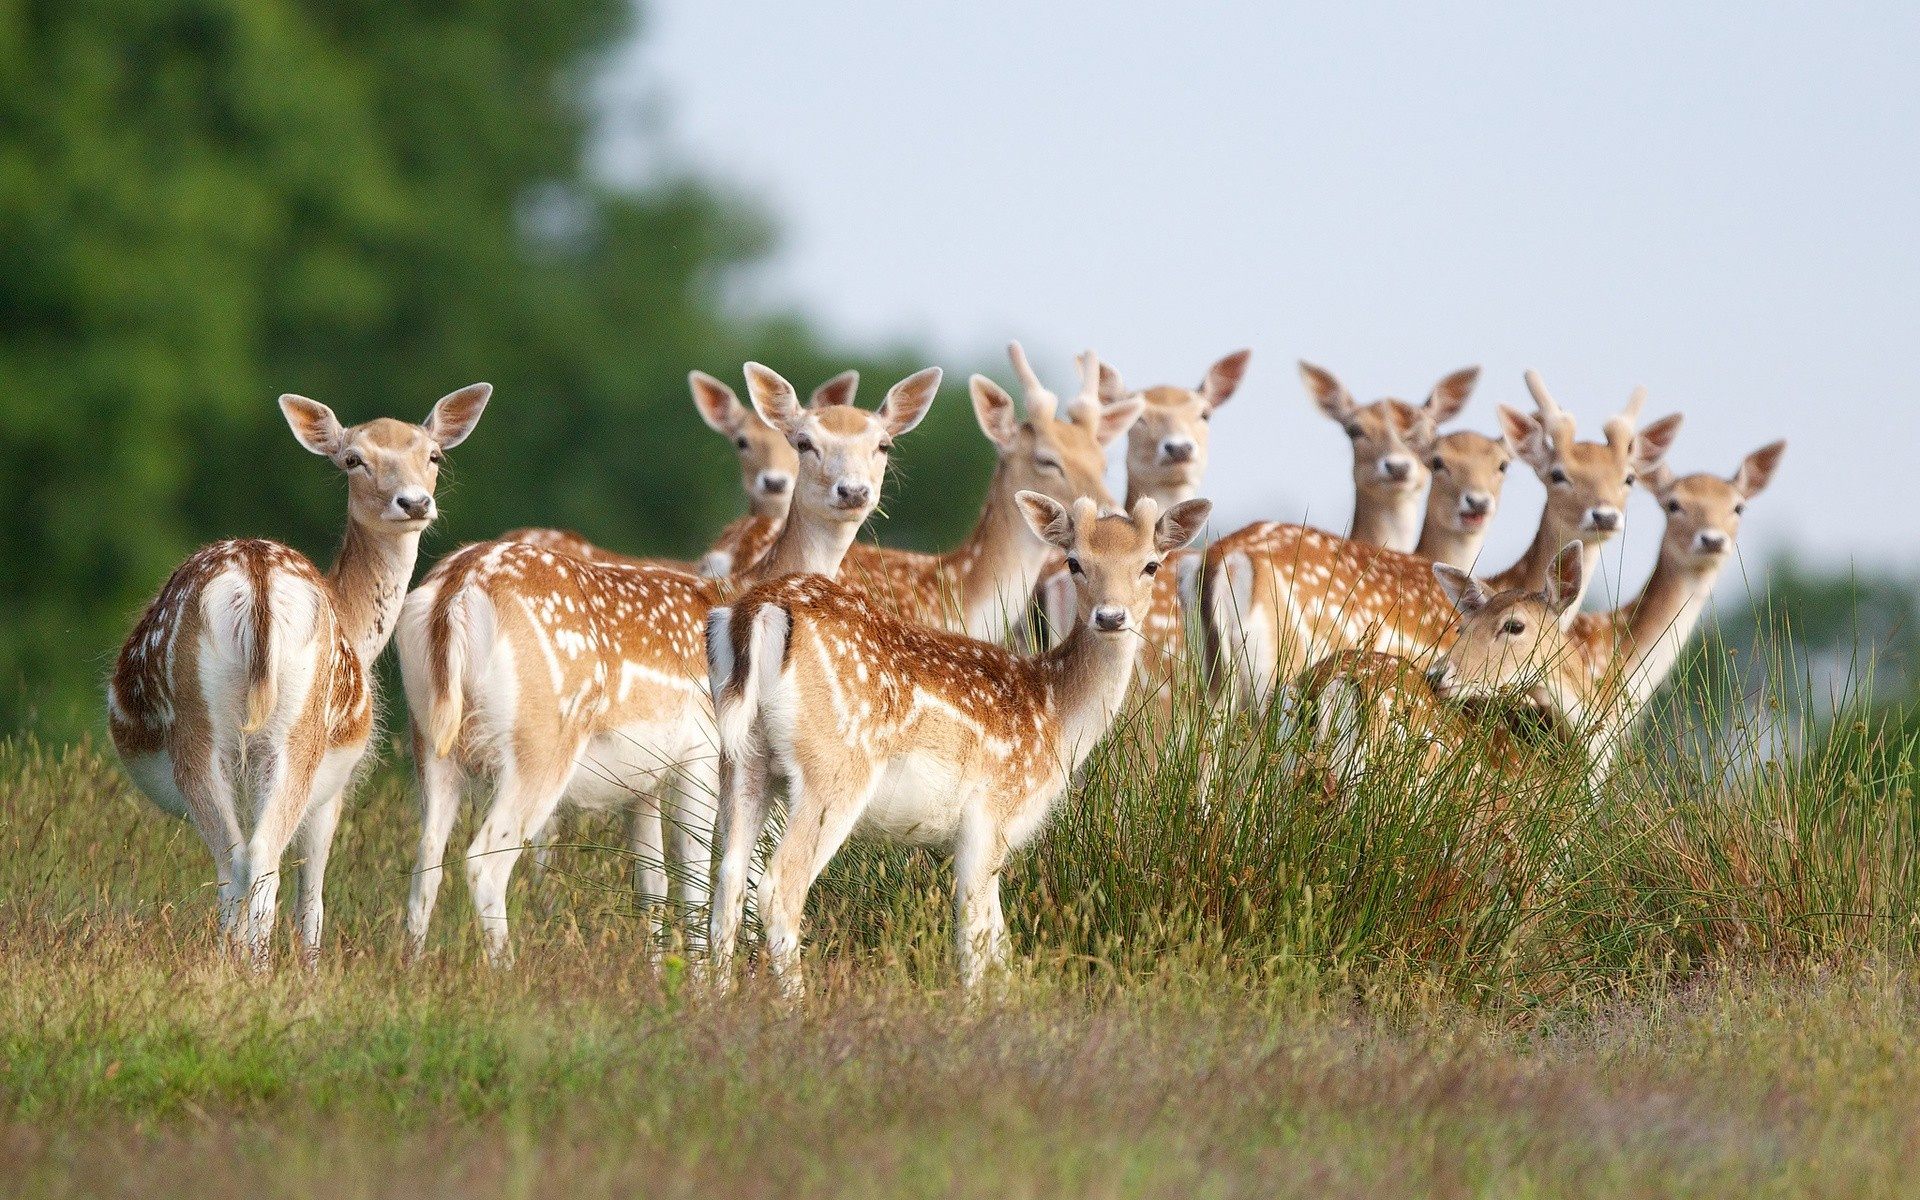 Is a group of deer a herd?